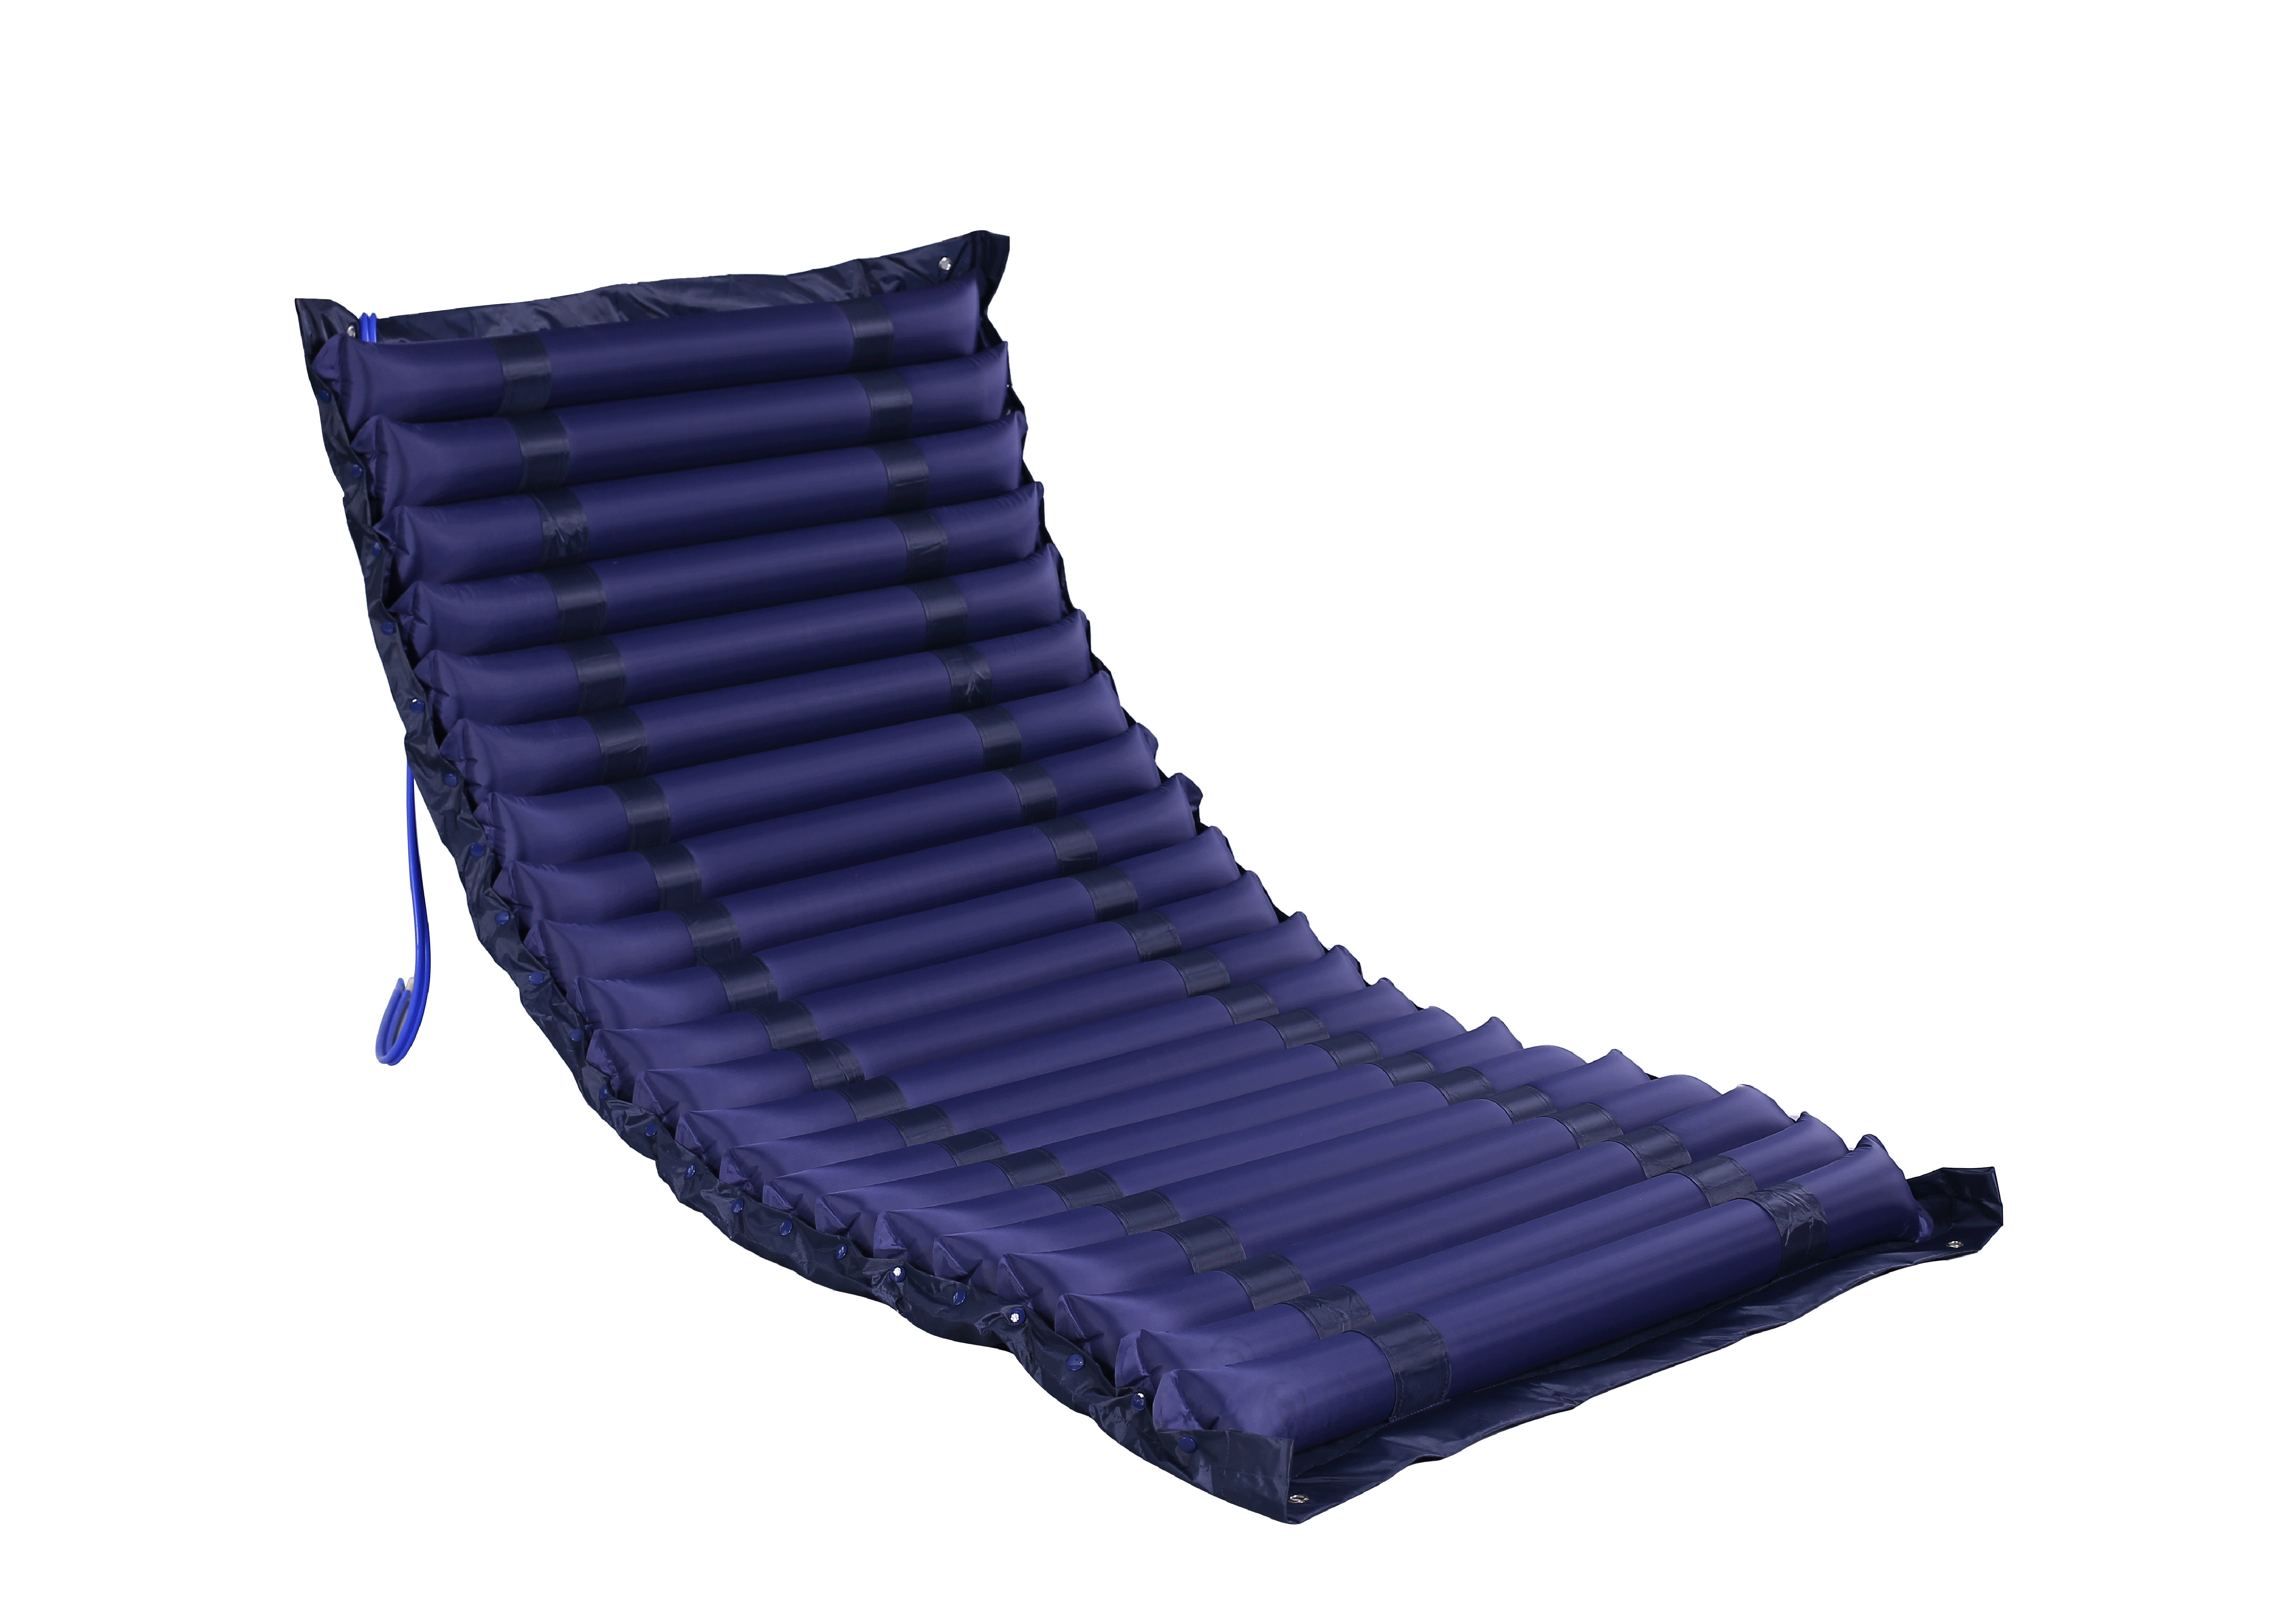 ICU type anti bedsore air mattress for ICU bed